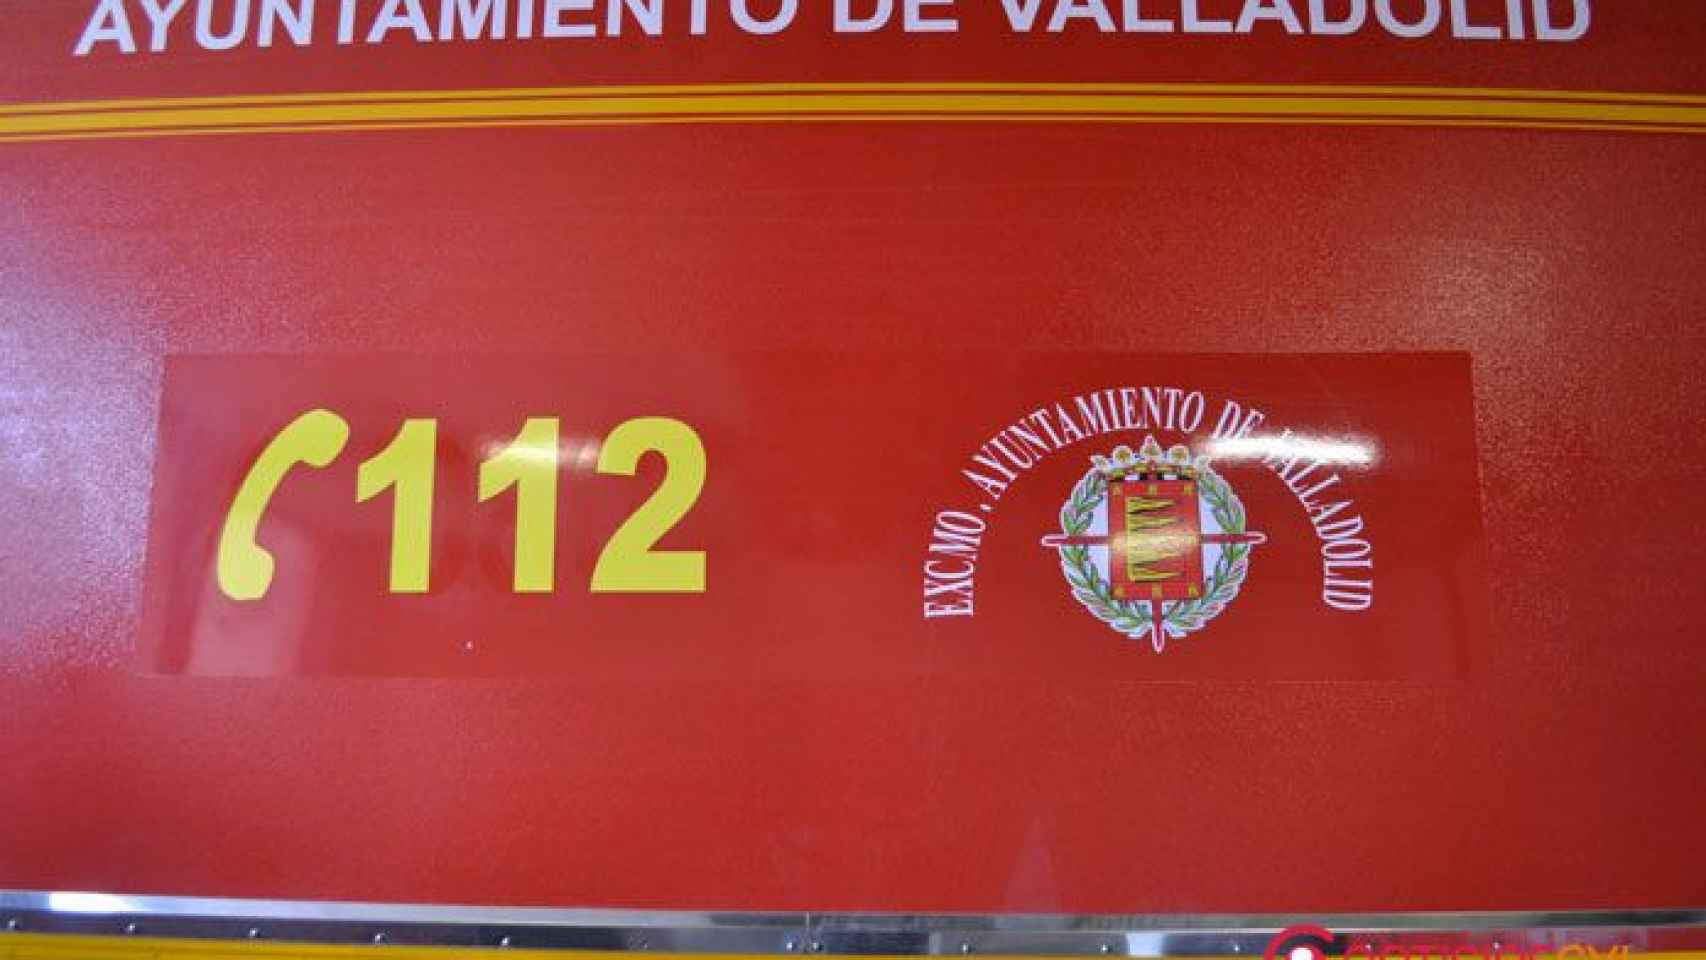 Bomberos Valladolid renovacion vehiculos materiales ayuntamiento puente velez (4)